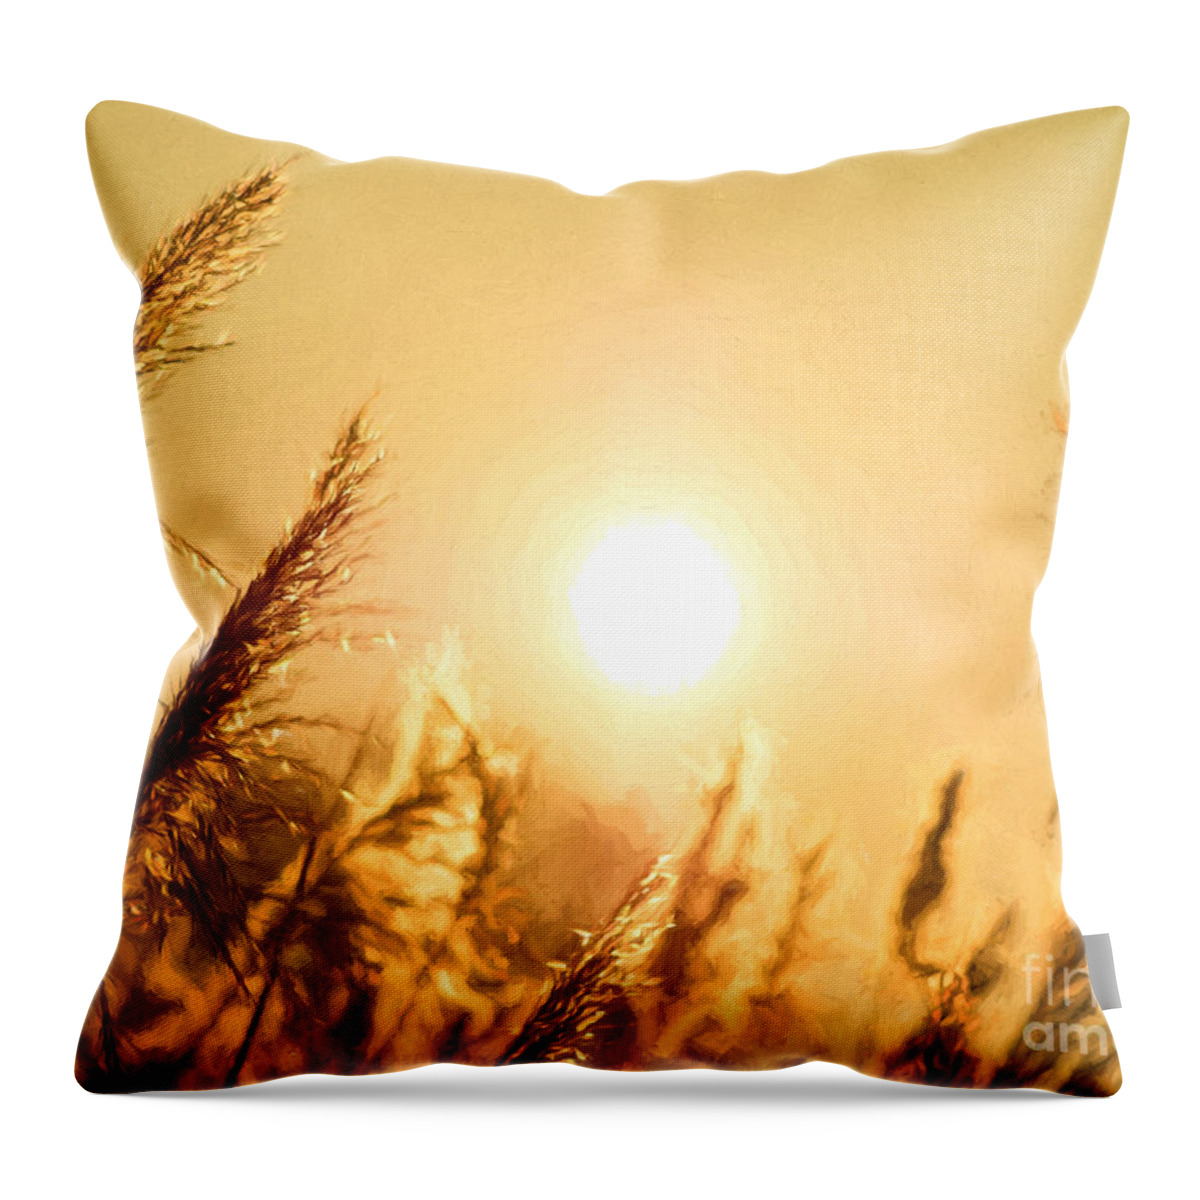 Grass Throw Pillow featuring the photograph Sun by Daniel Heine